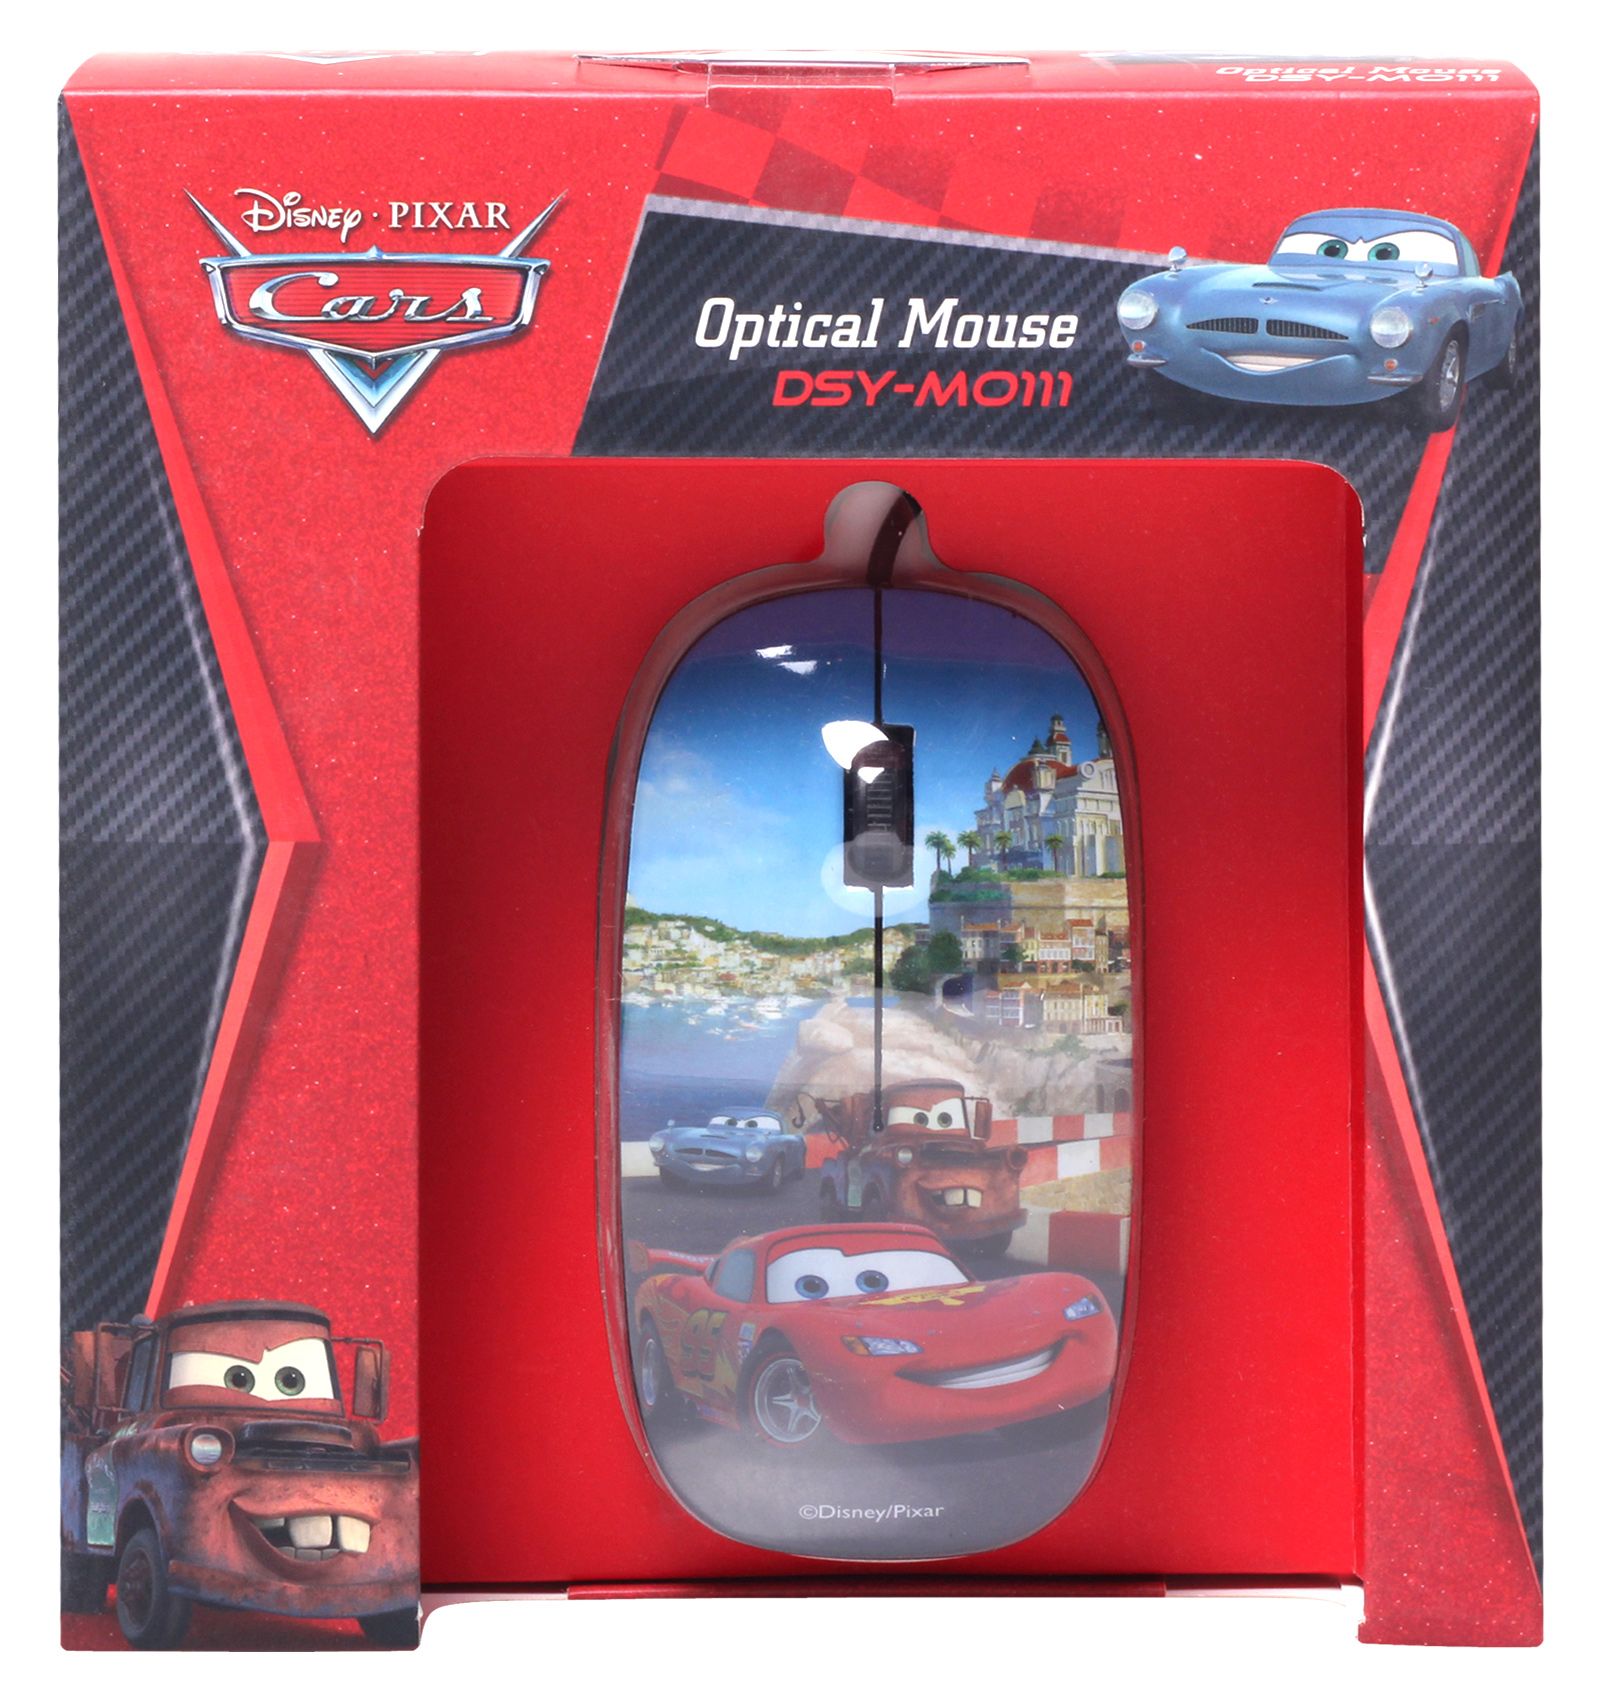 Disney Pixar Cars - Optical Mouse